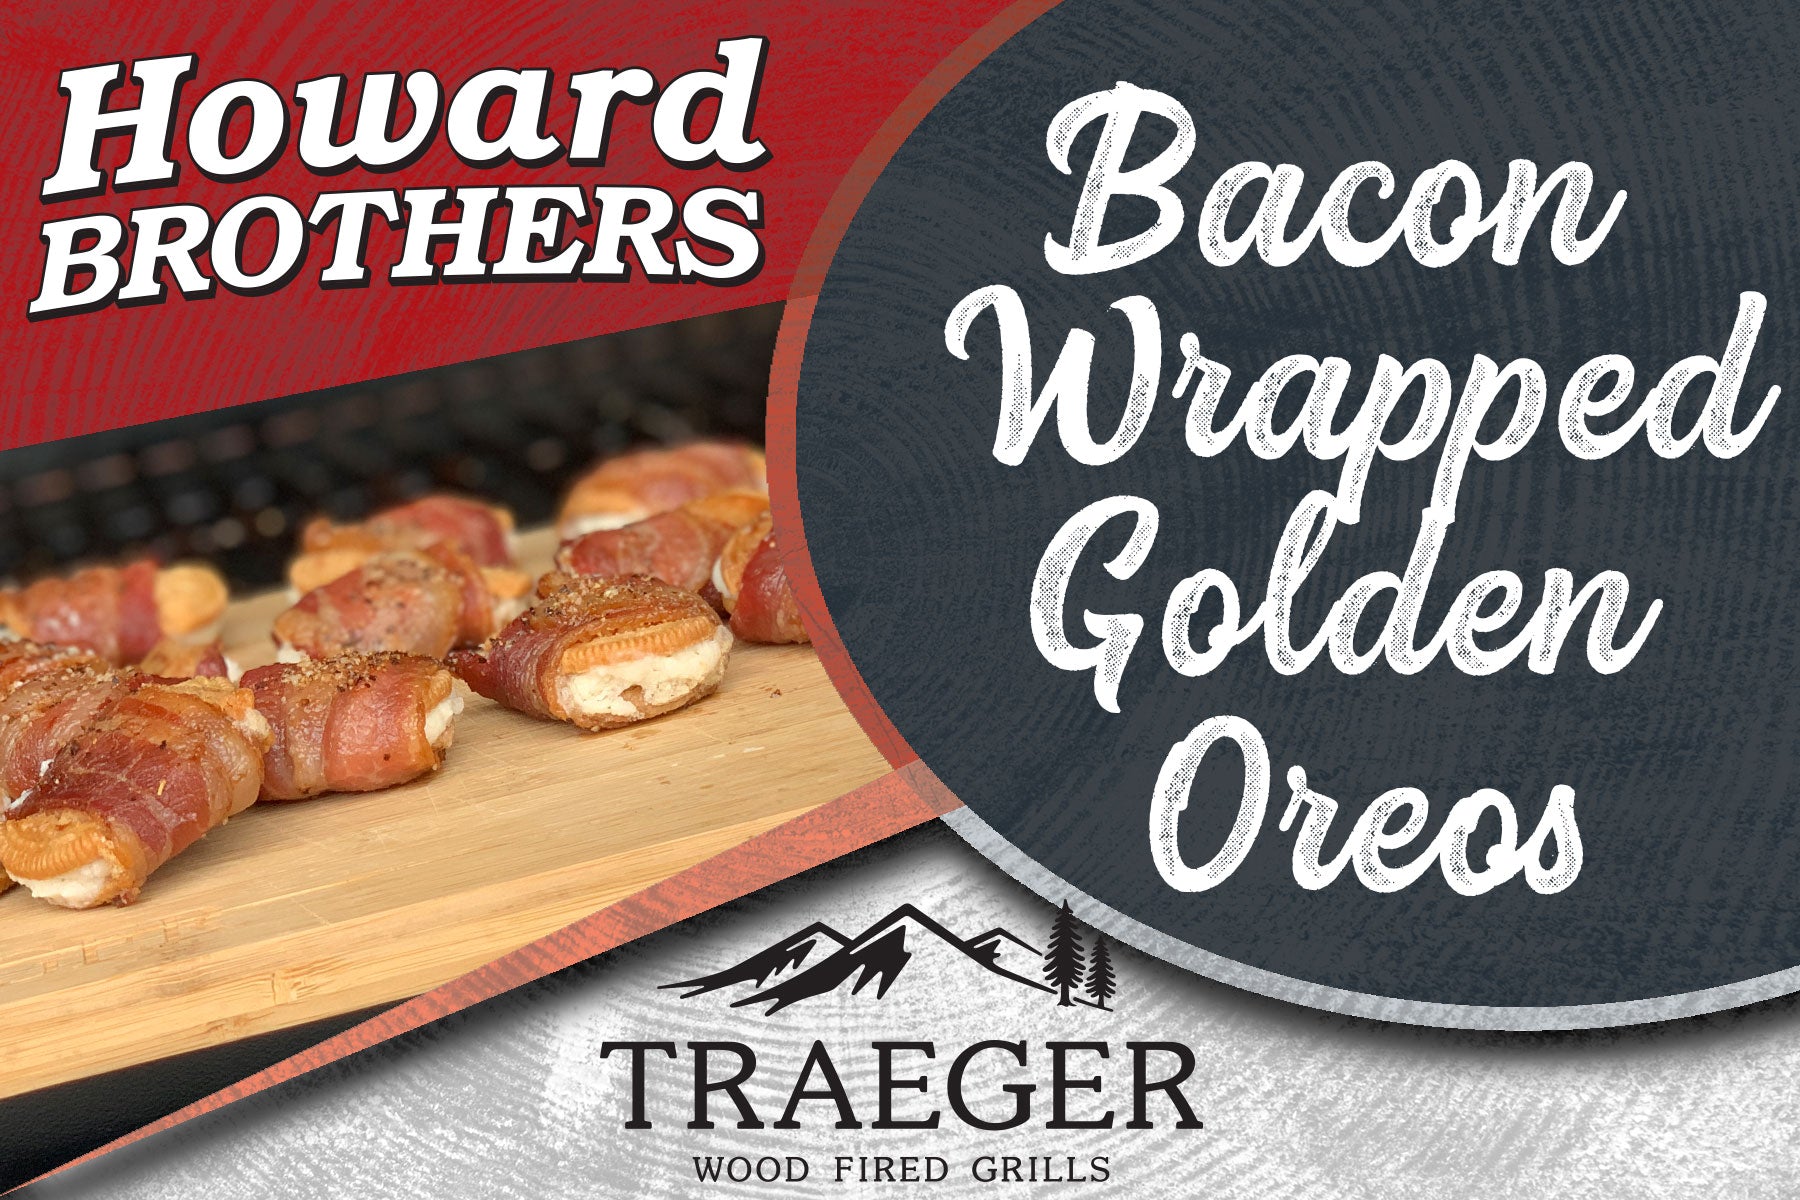 Traeger Cook - Bacon Wrapped Oreos